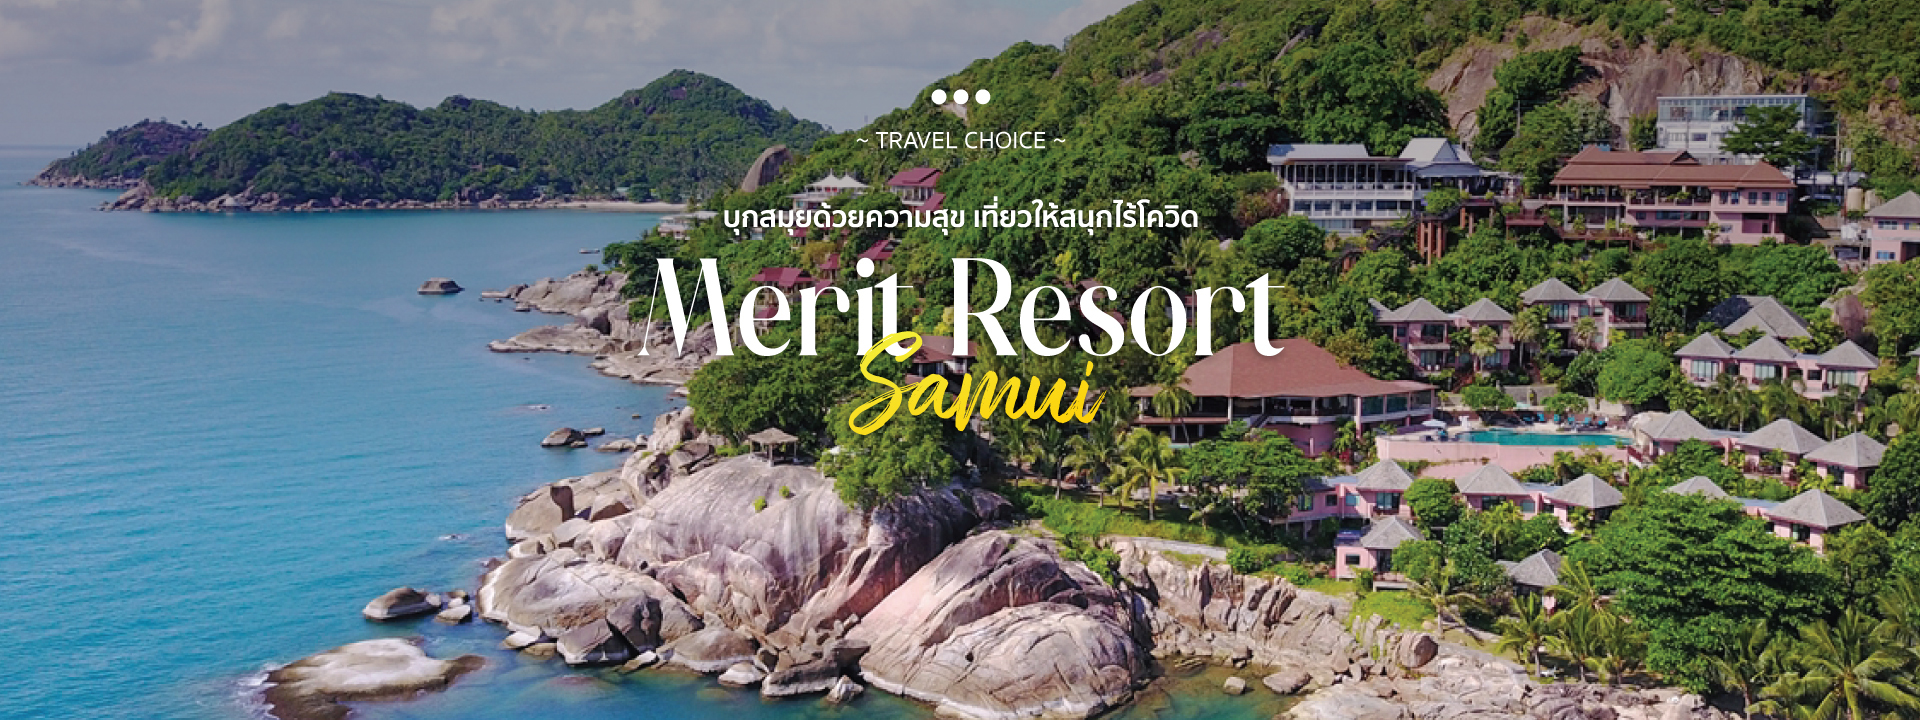 Merit Resort Samui หยุดยาวนี้ไปบุกสมุยด้วยความสุข เที่ยวให้สุดกับชีวิตติดเกาะที่ เกาะสมุย